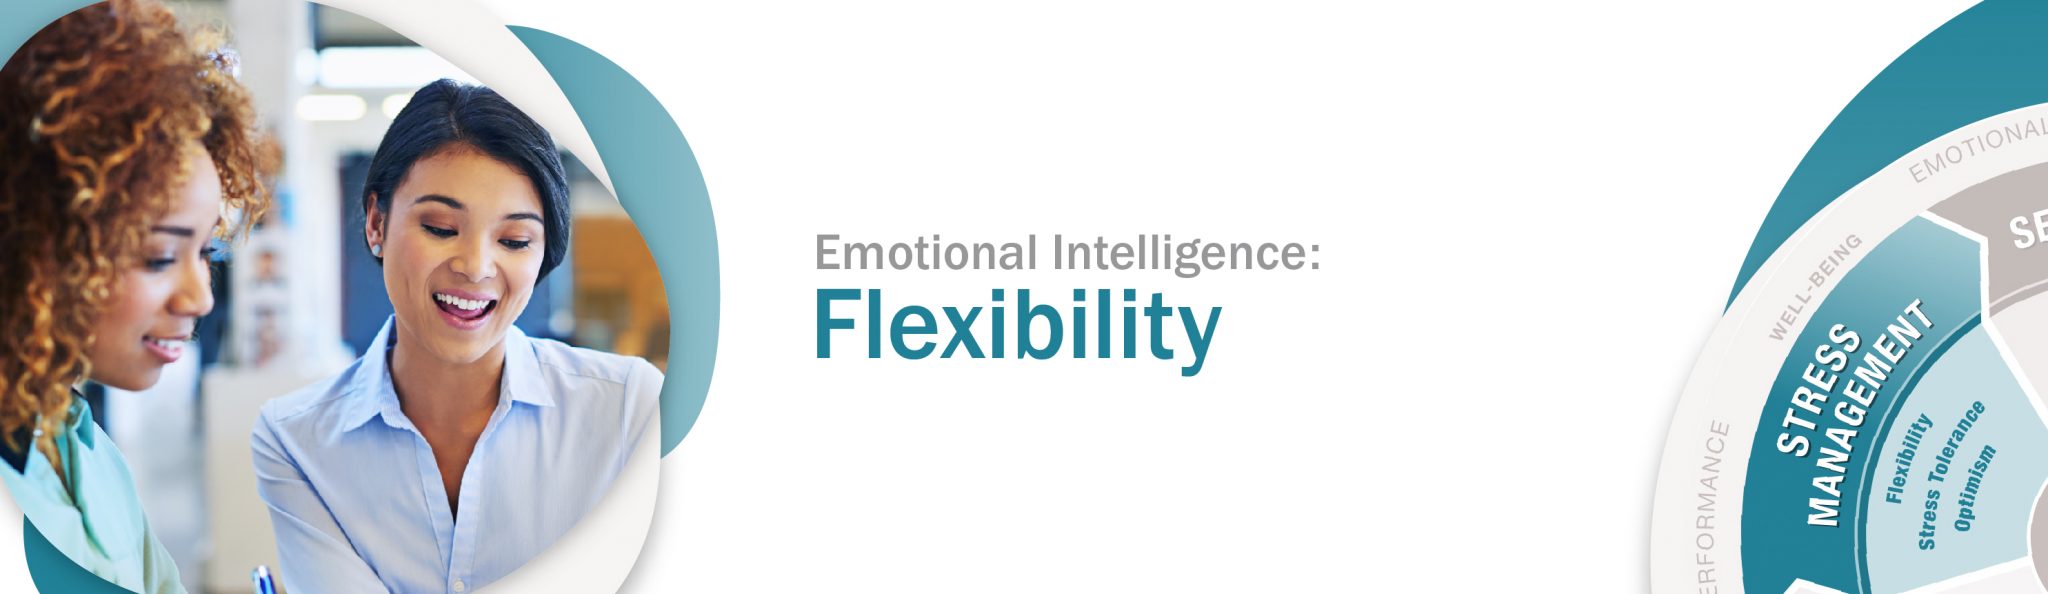 Leading with Emotional Intelligence: Flexibility